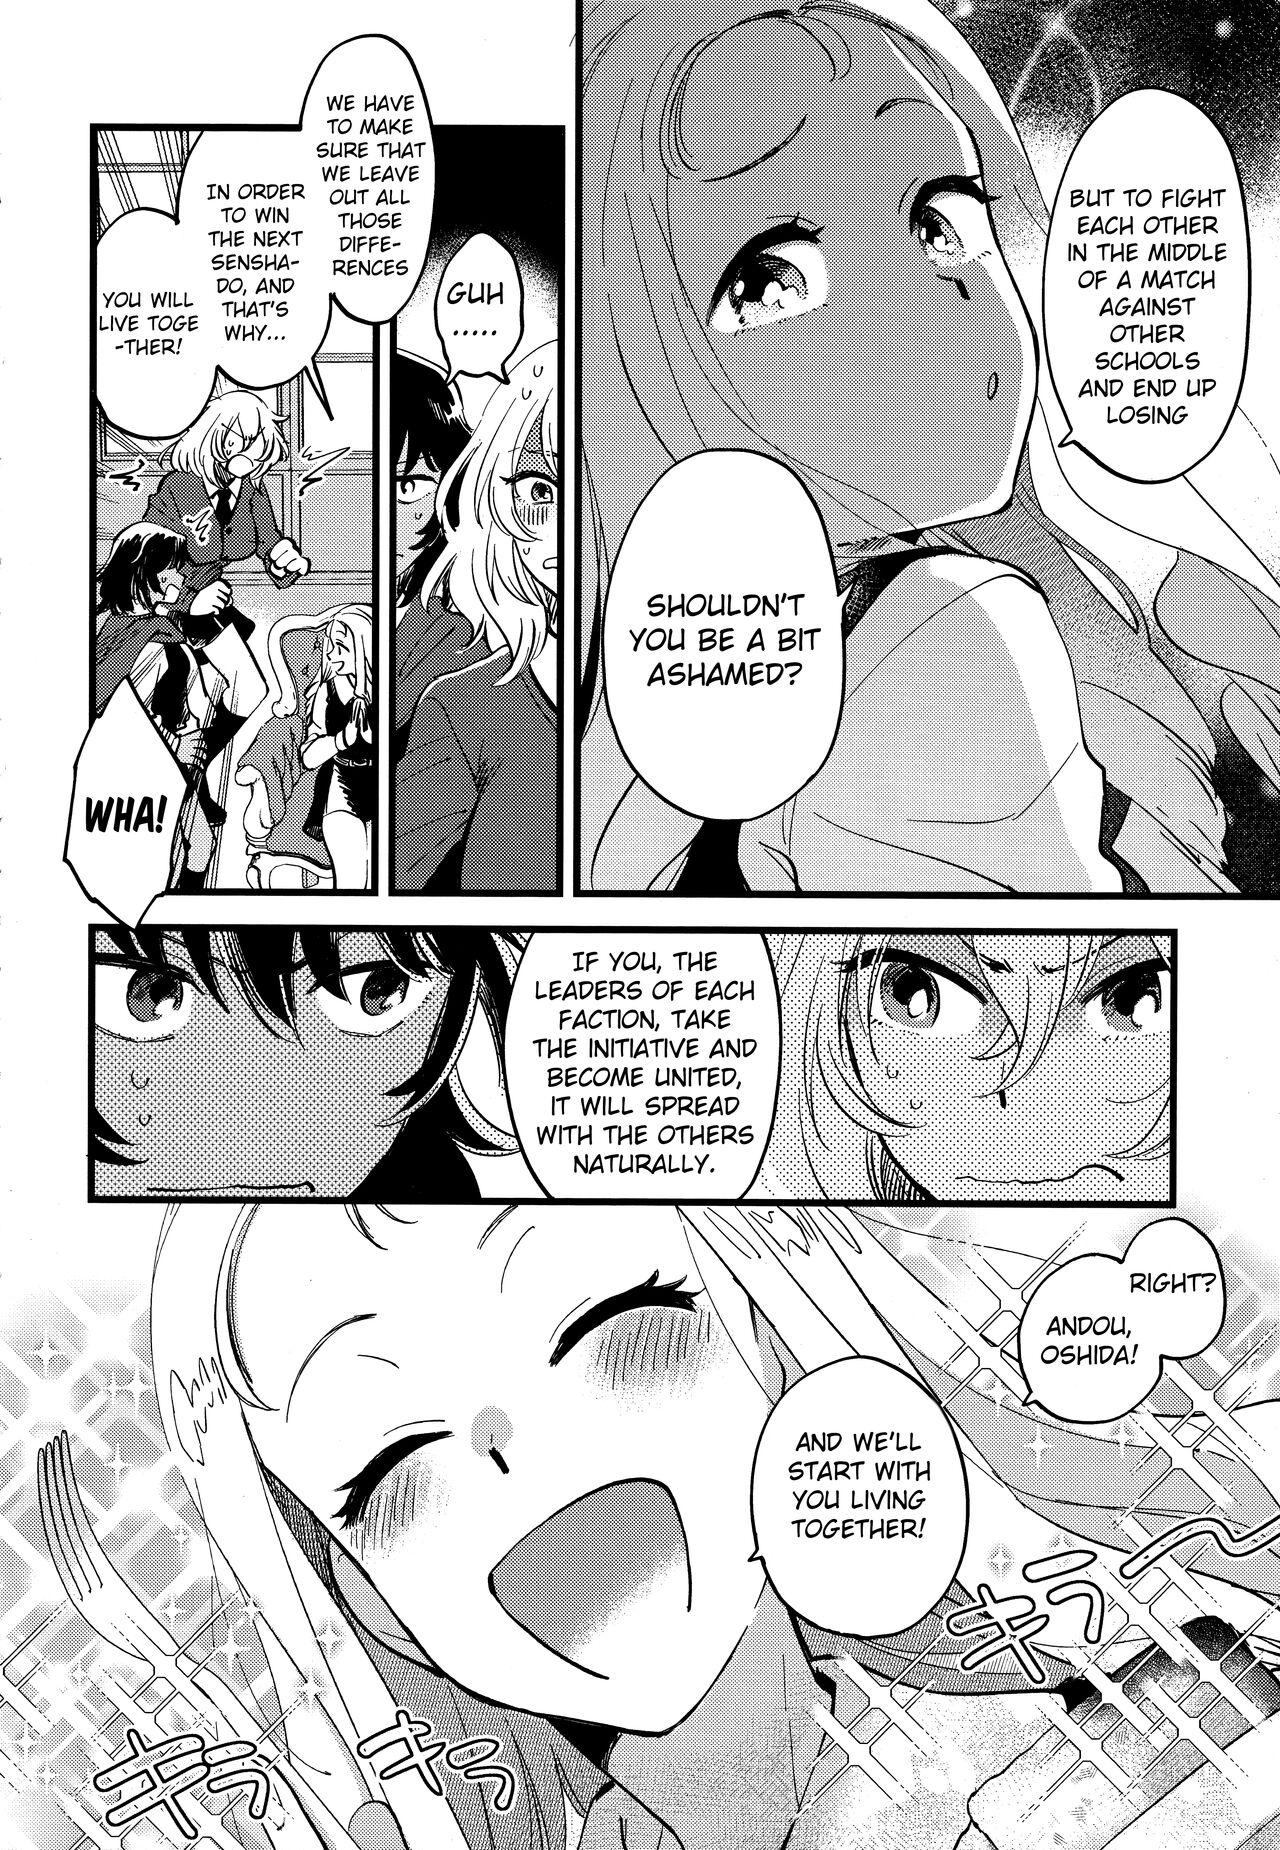 Women Fucking AnOshi, Nakayoku! - Girls und panzer Insertion - Page 3